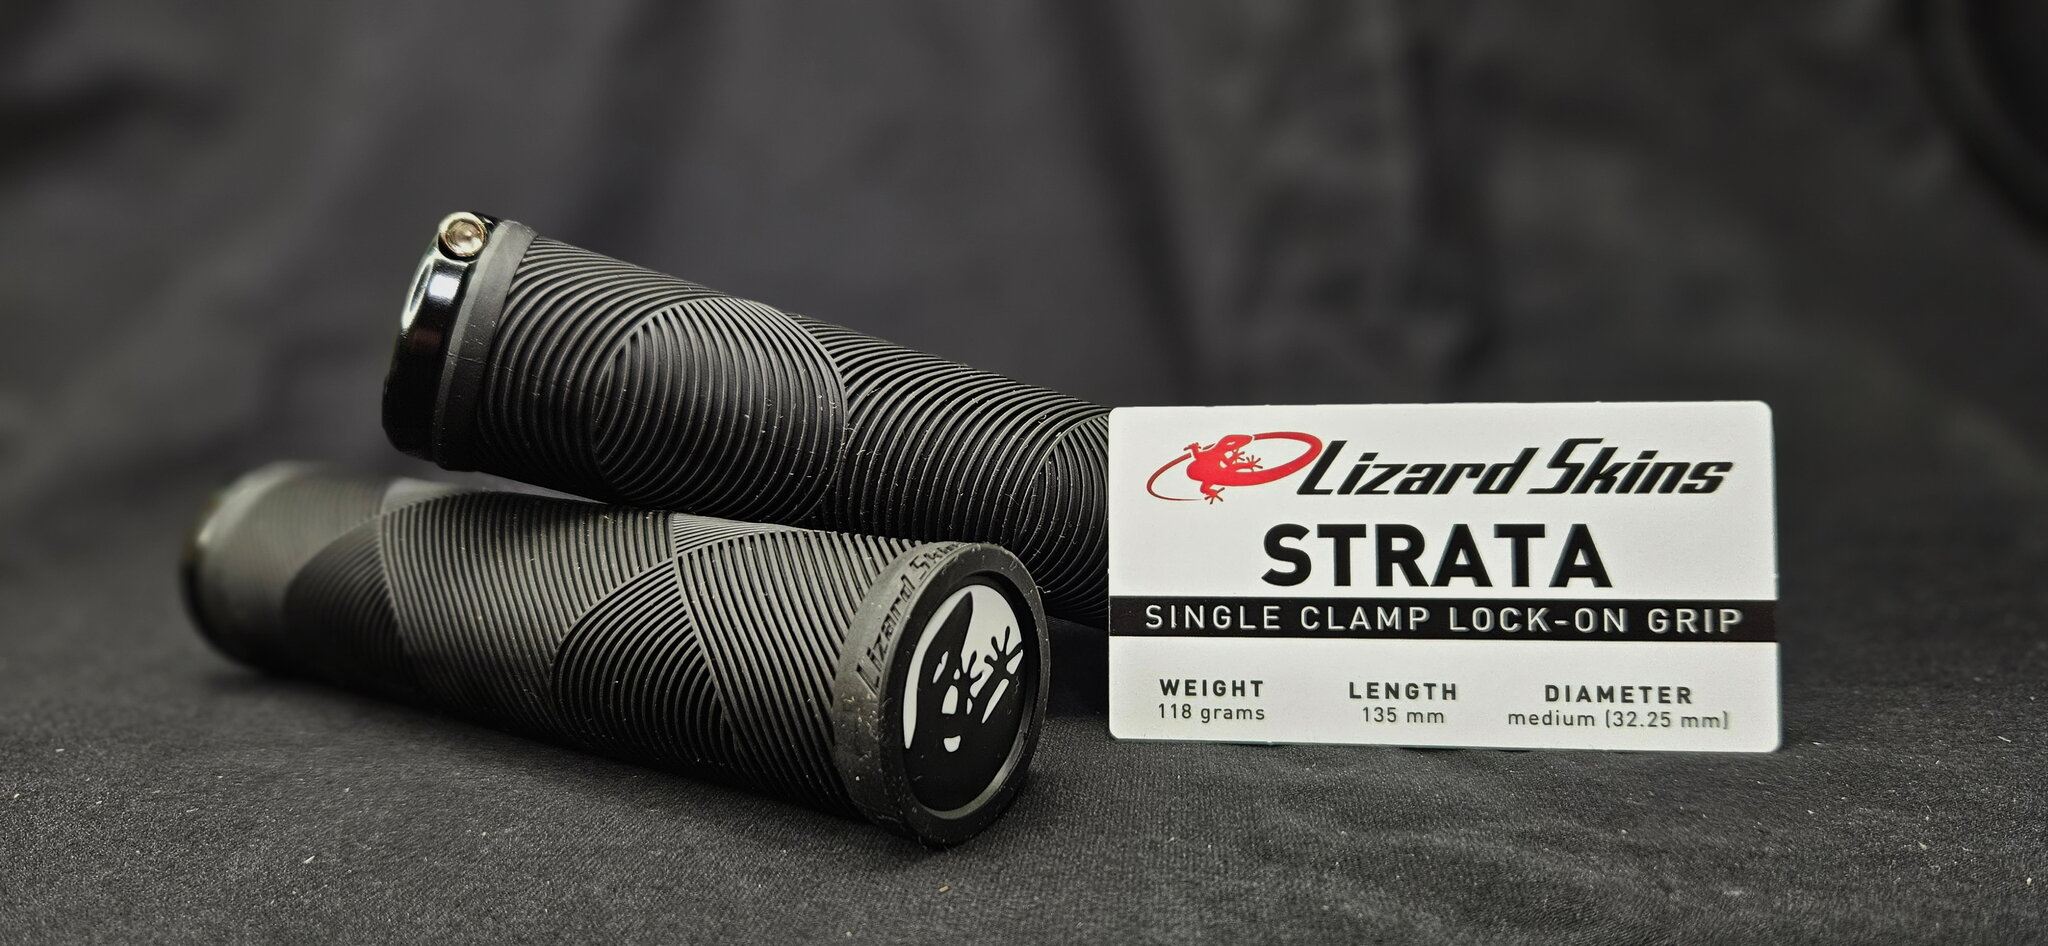 Грипсы (ручки) для руля велосипеда Lizard Skins Strata, LOCK-ON, толщина 32,25 мм, черные (Jet Black)